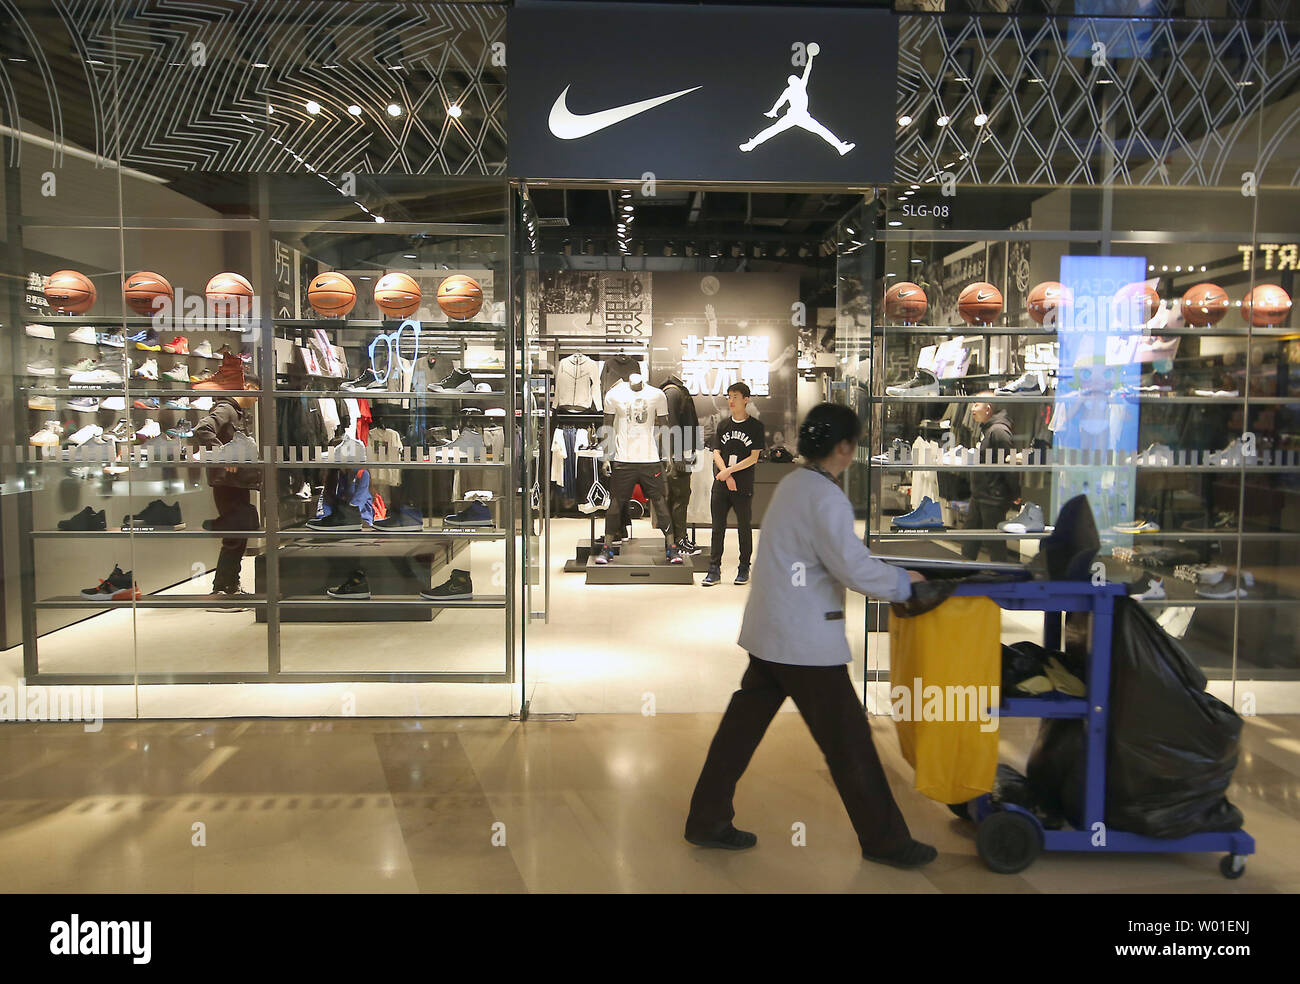 tiendas de tenis jordan en estados unidos - Tienda Online de Zapatos, Ropa  y Complementos de marca